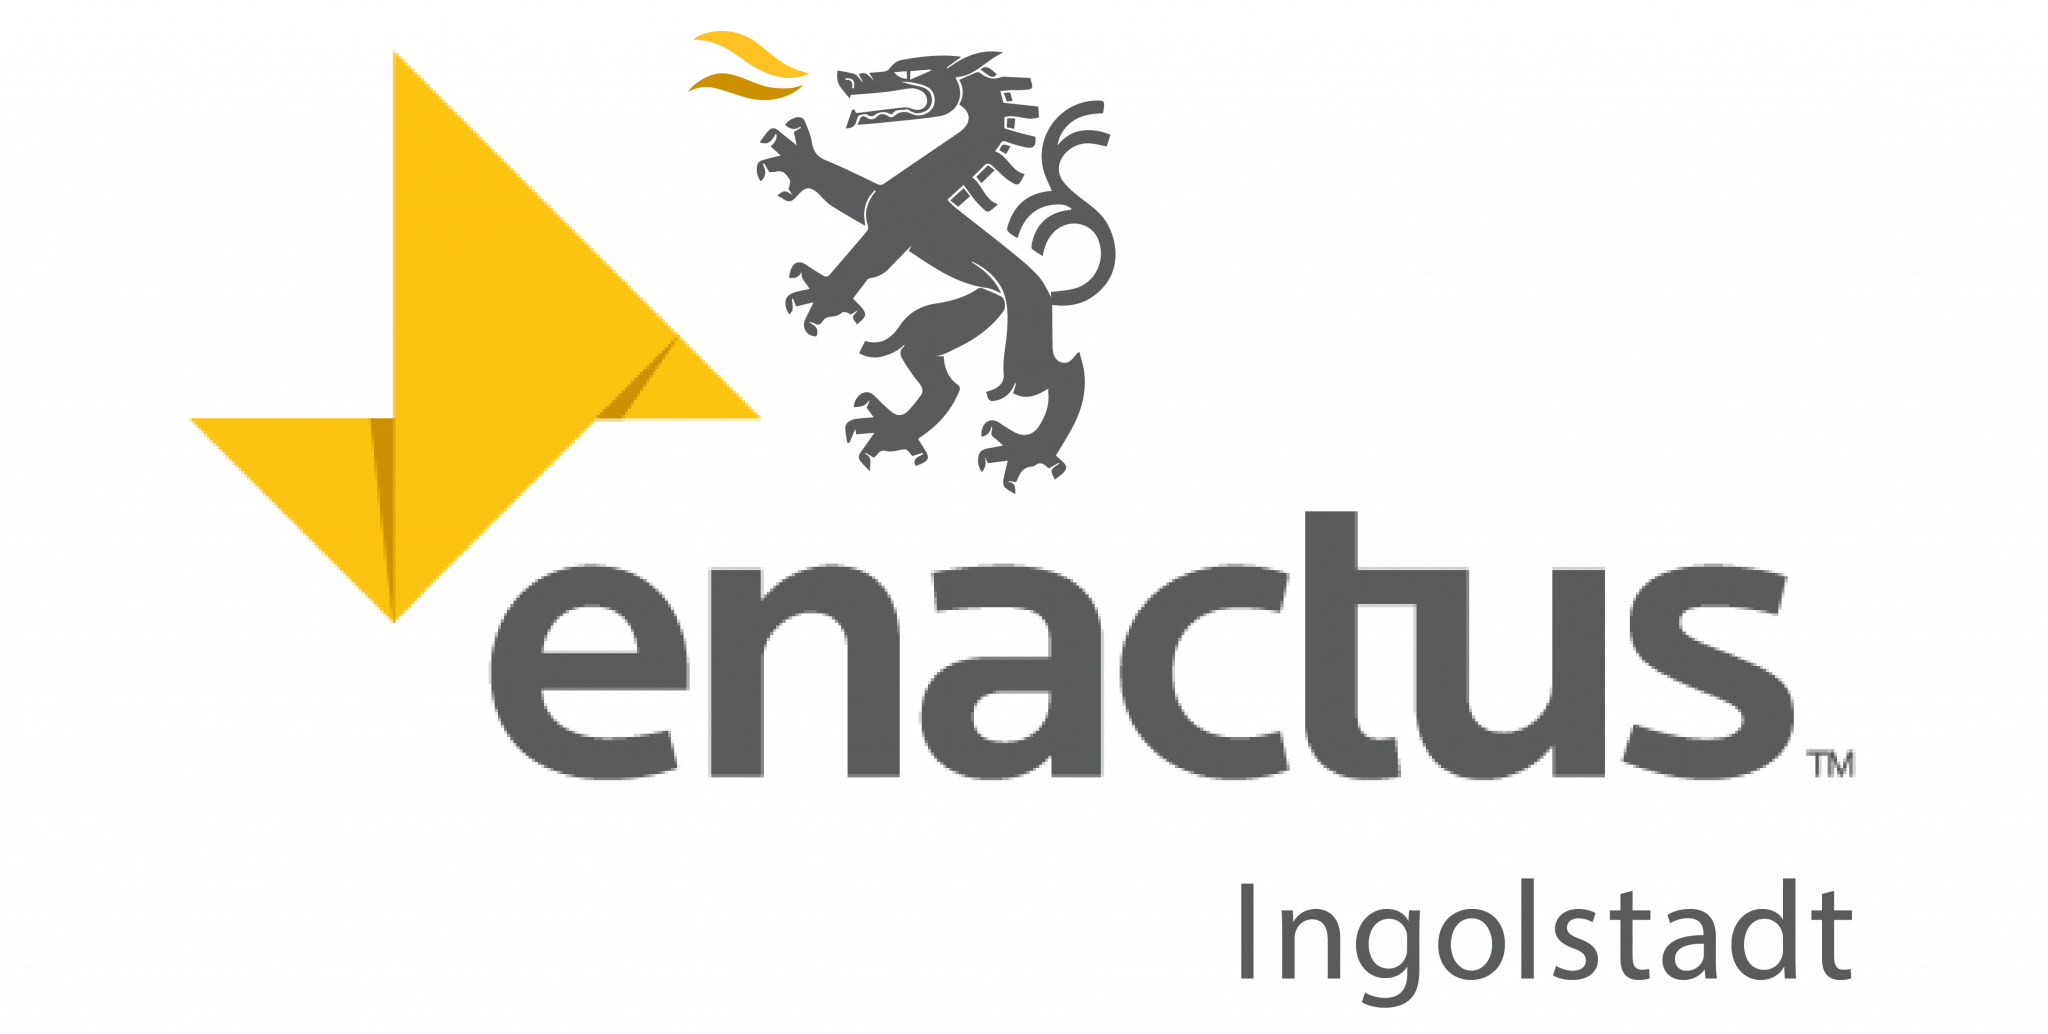 Enactus Ingolstadt logo